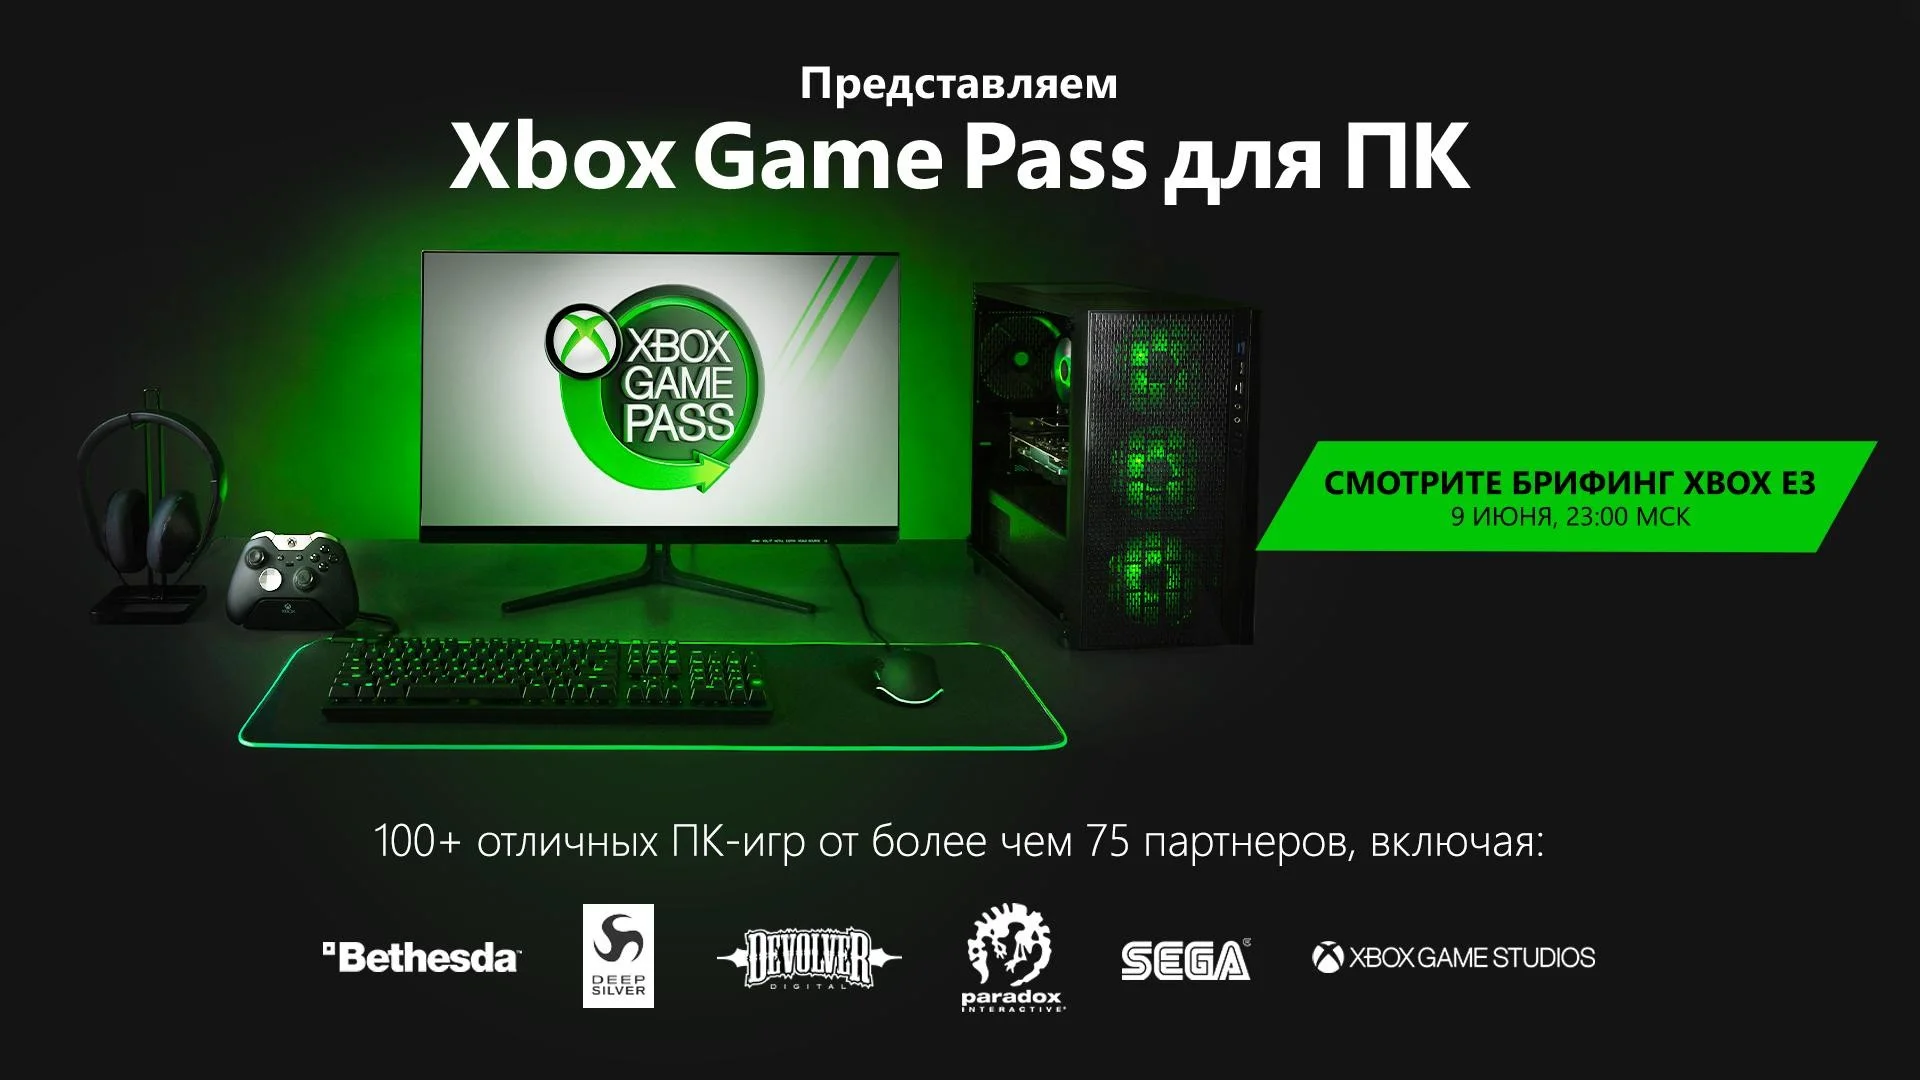 Xbox Game Pass запускается на РС, а Gears 5 и другие игры Microsoft выйдут в Steam - фото 1